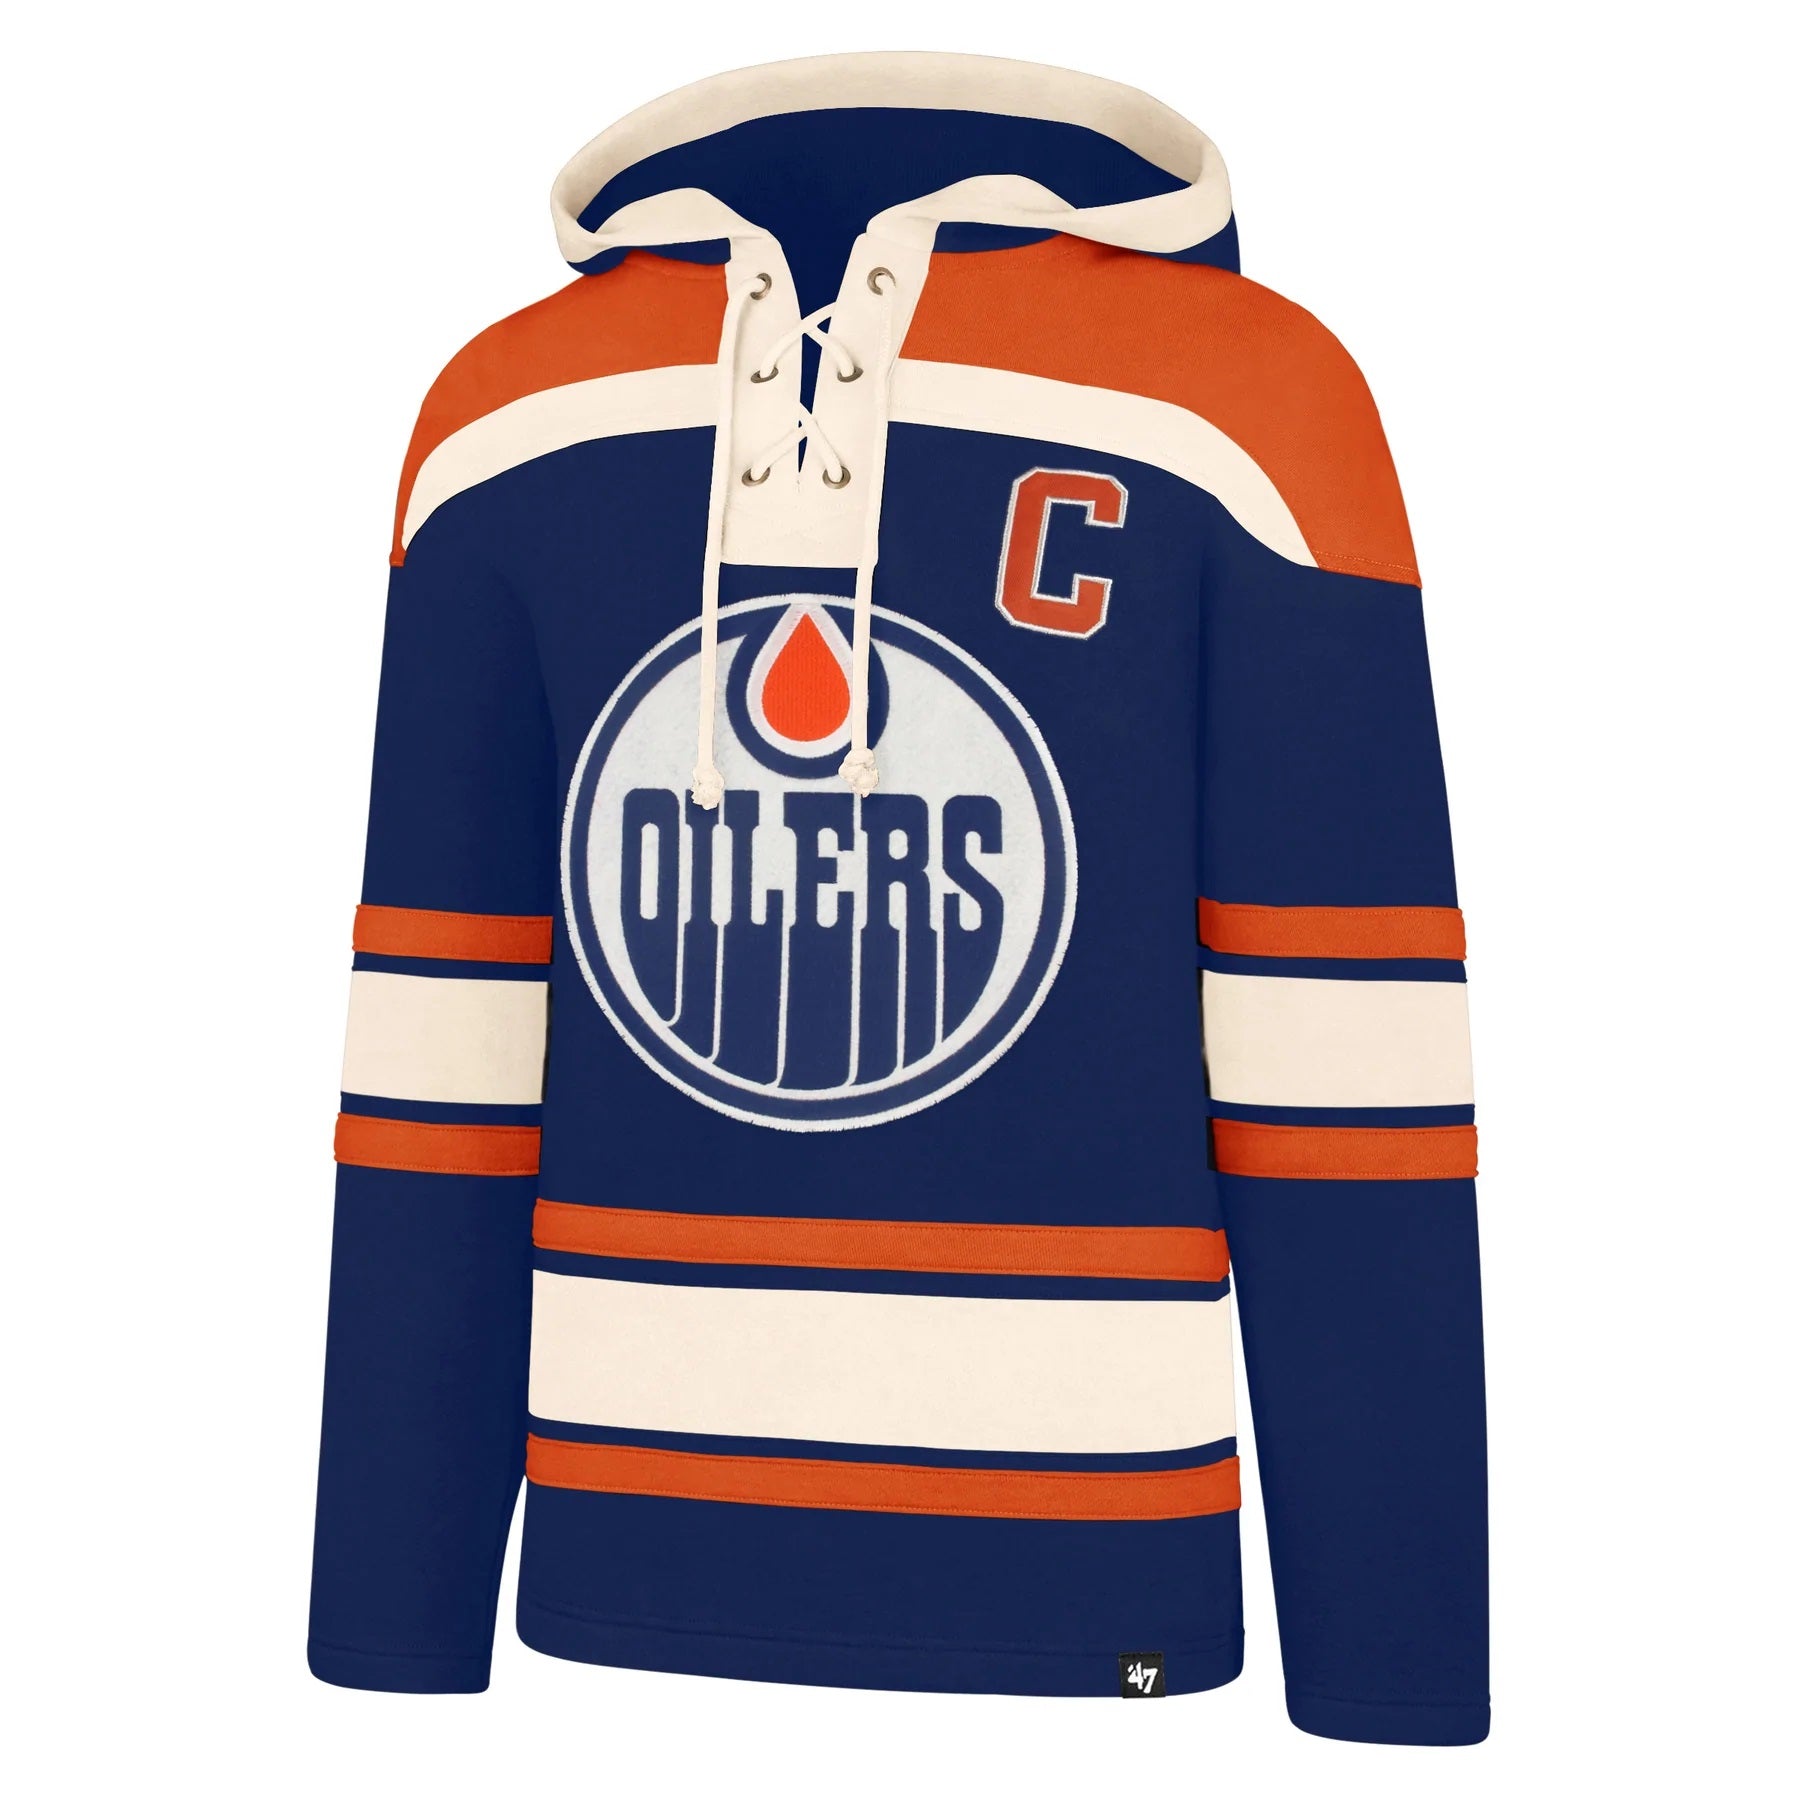 Edmonton Oilers Gear, Jerseys, Store, Pro Shop, Hockey Apparel